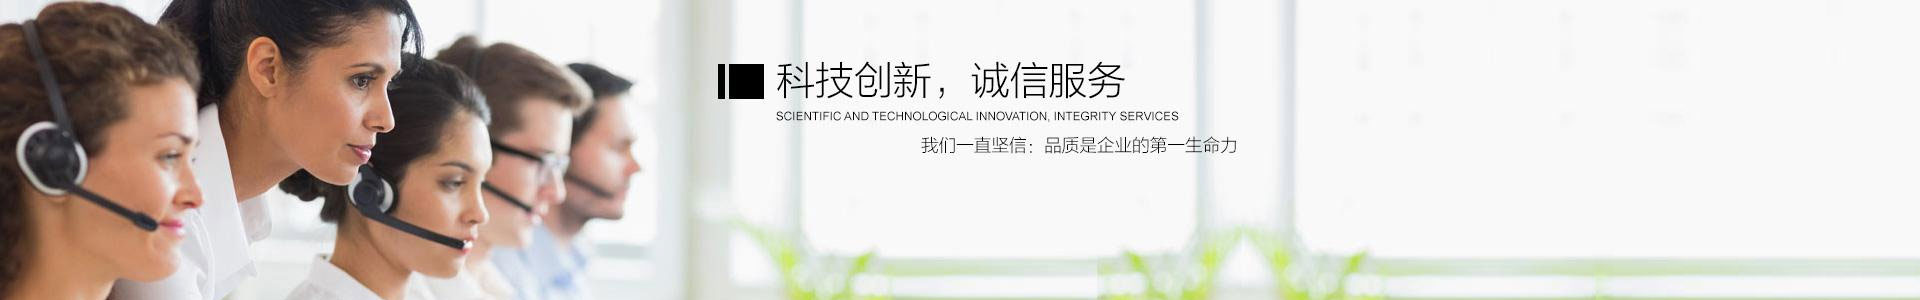 凯时游戏(中国)官方网站_产品3249